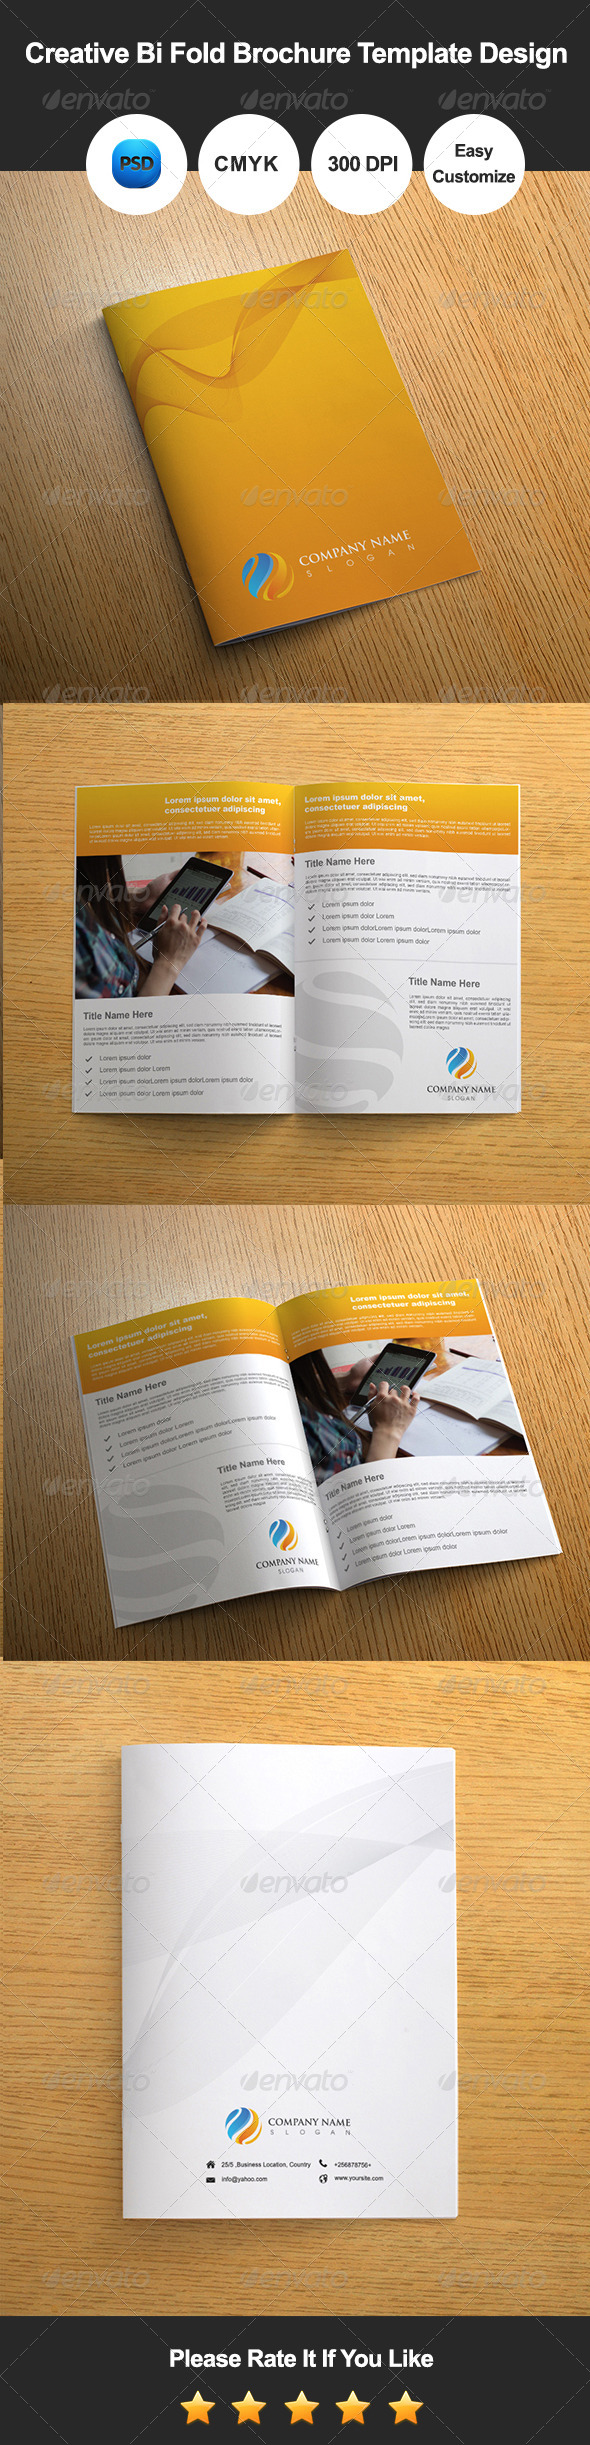 Creative Bi Fold Brochure Template Design (Corporate)